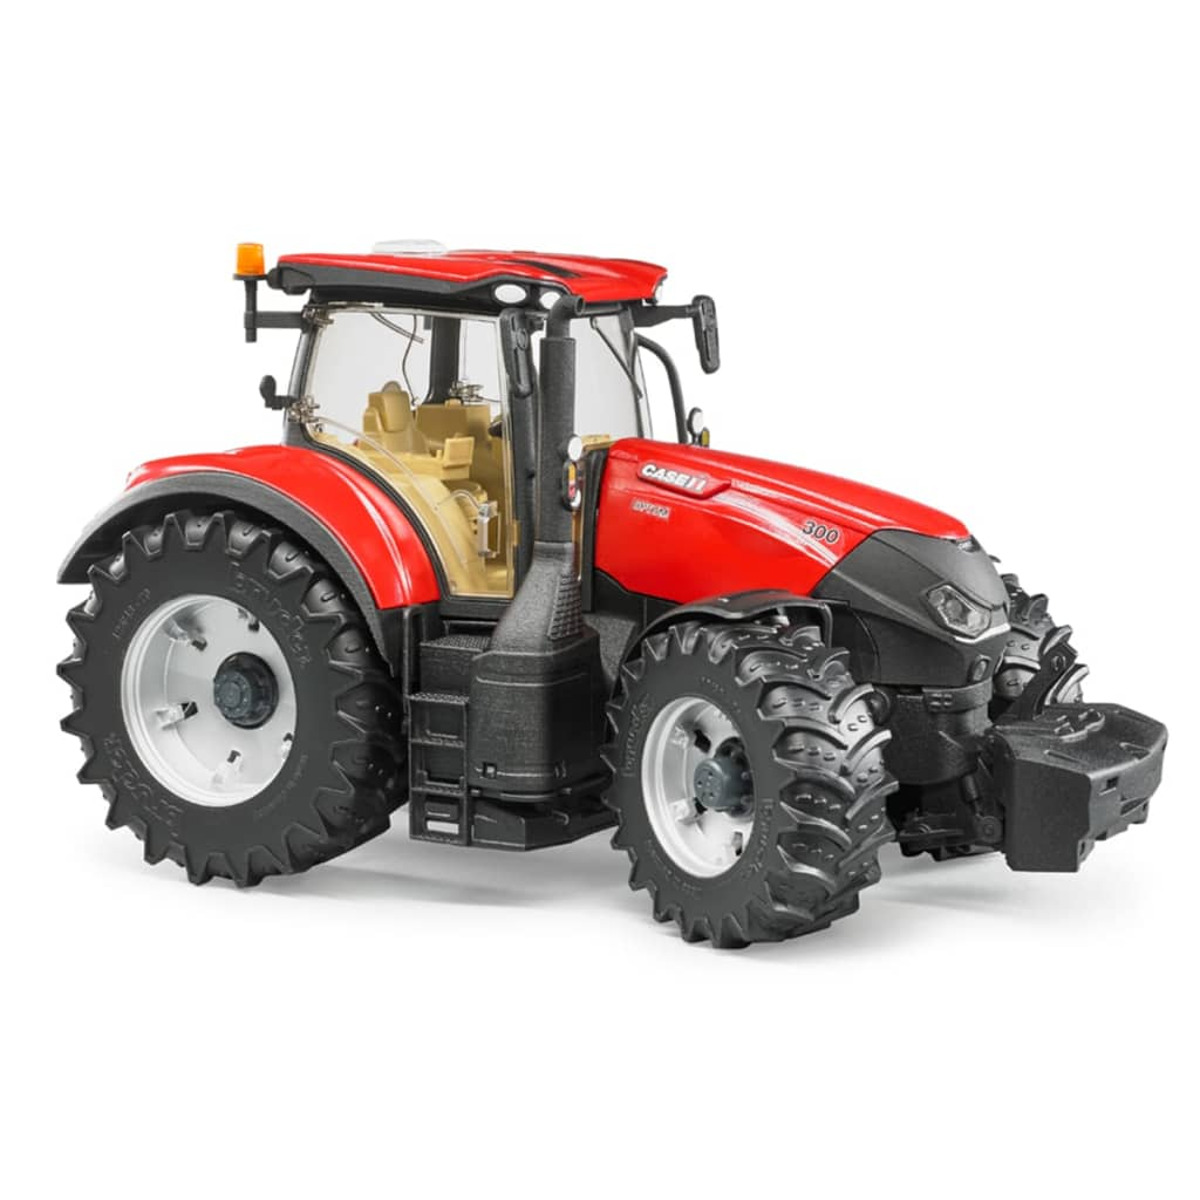 Modellfahrzeug BRUDER Traktor 411085